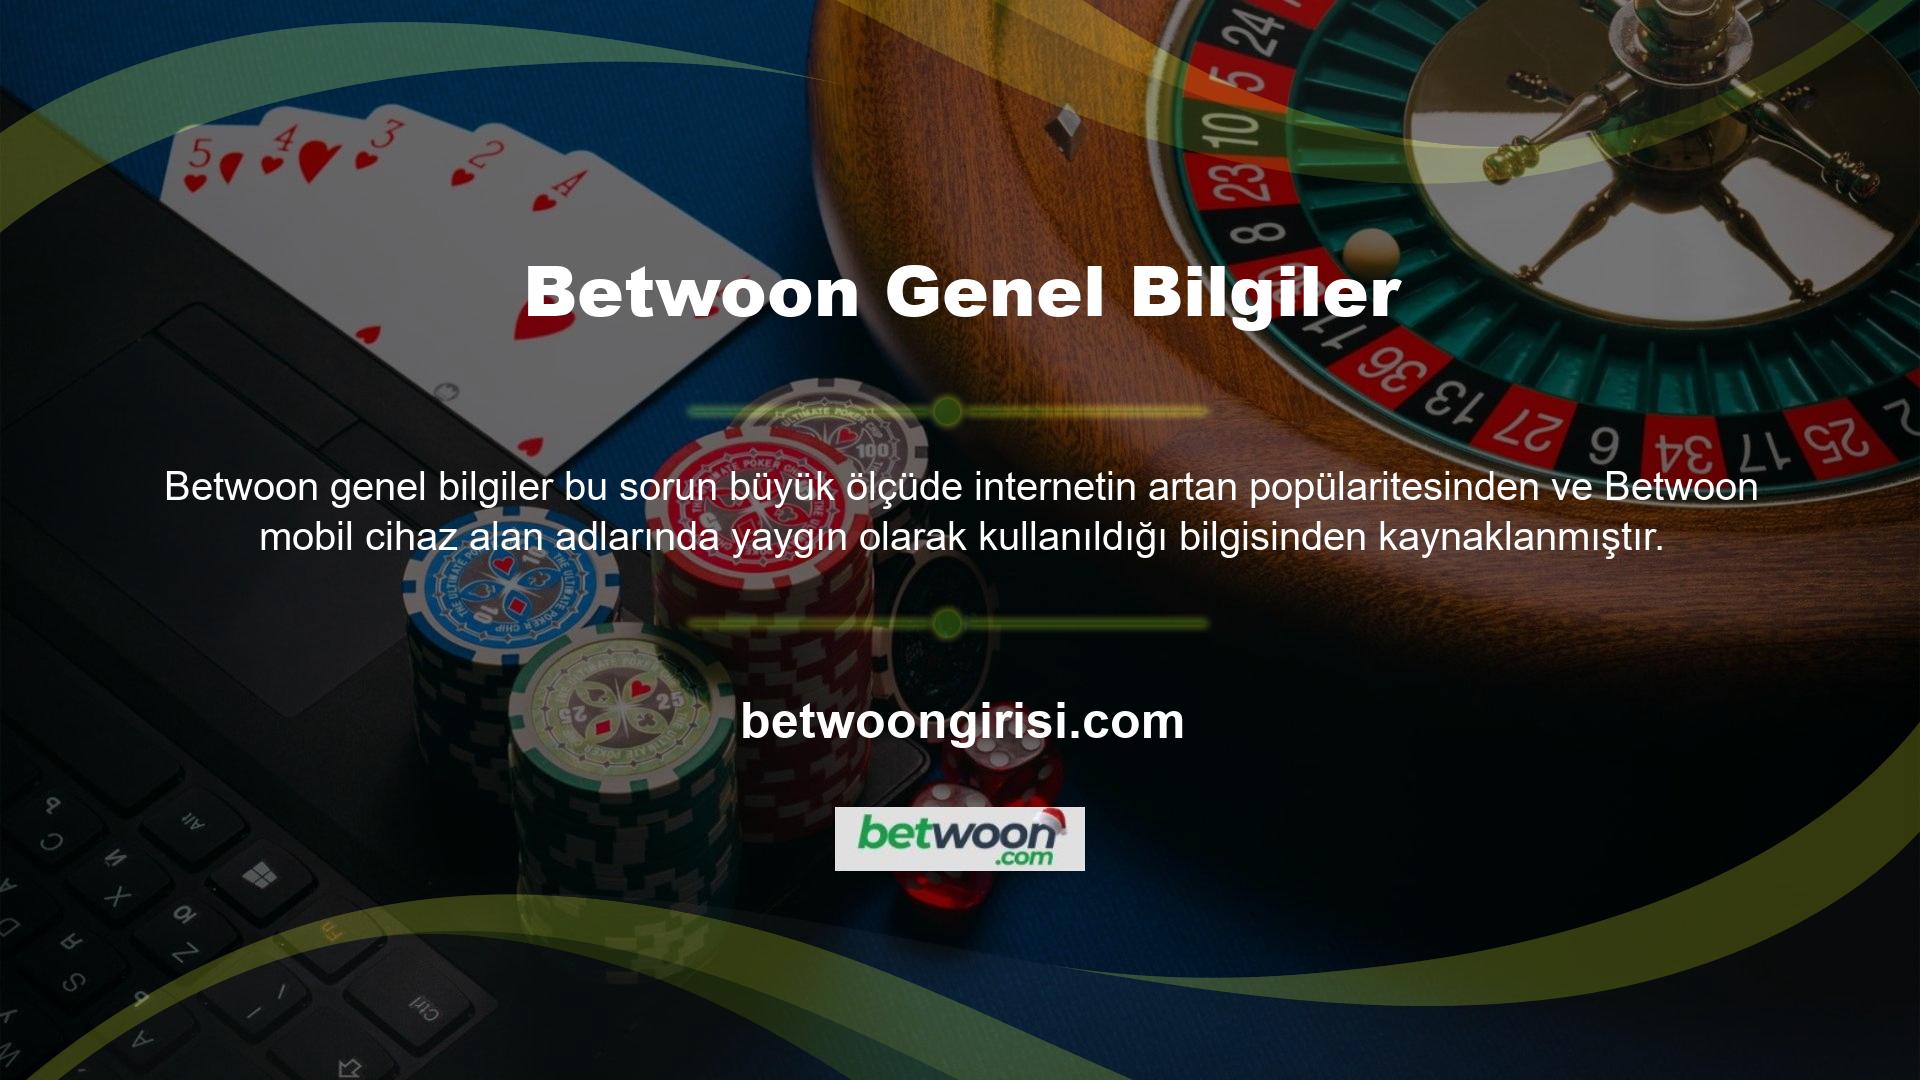 Sitede hem bahisçilerin hem de casino oyuncularının işlem yapması için mobil cihaz seçimi mevcuttur